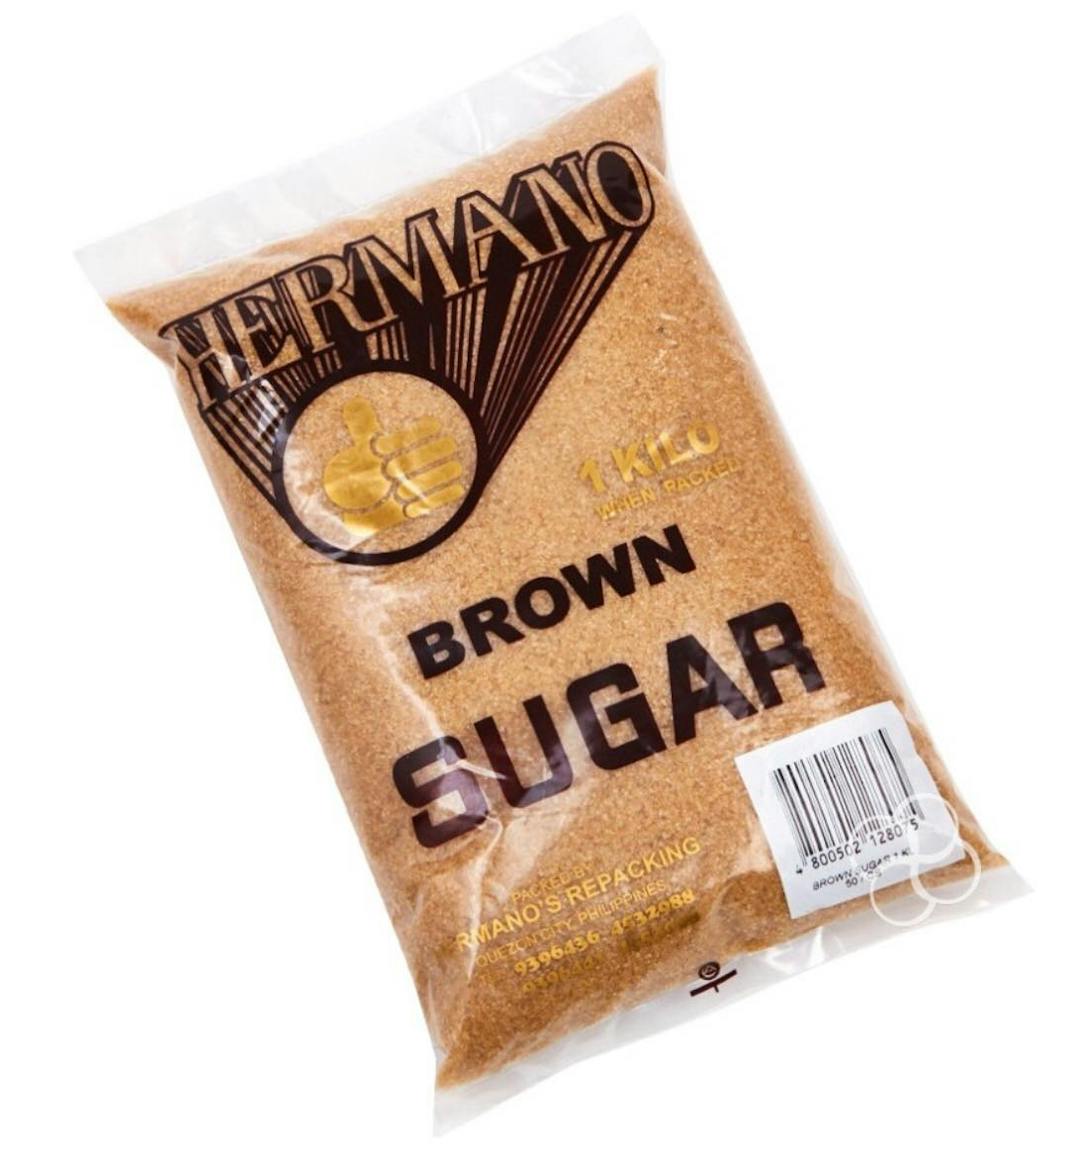 Hermano Brown Sugar | 1 kg